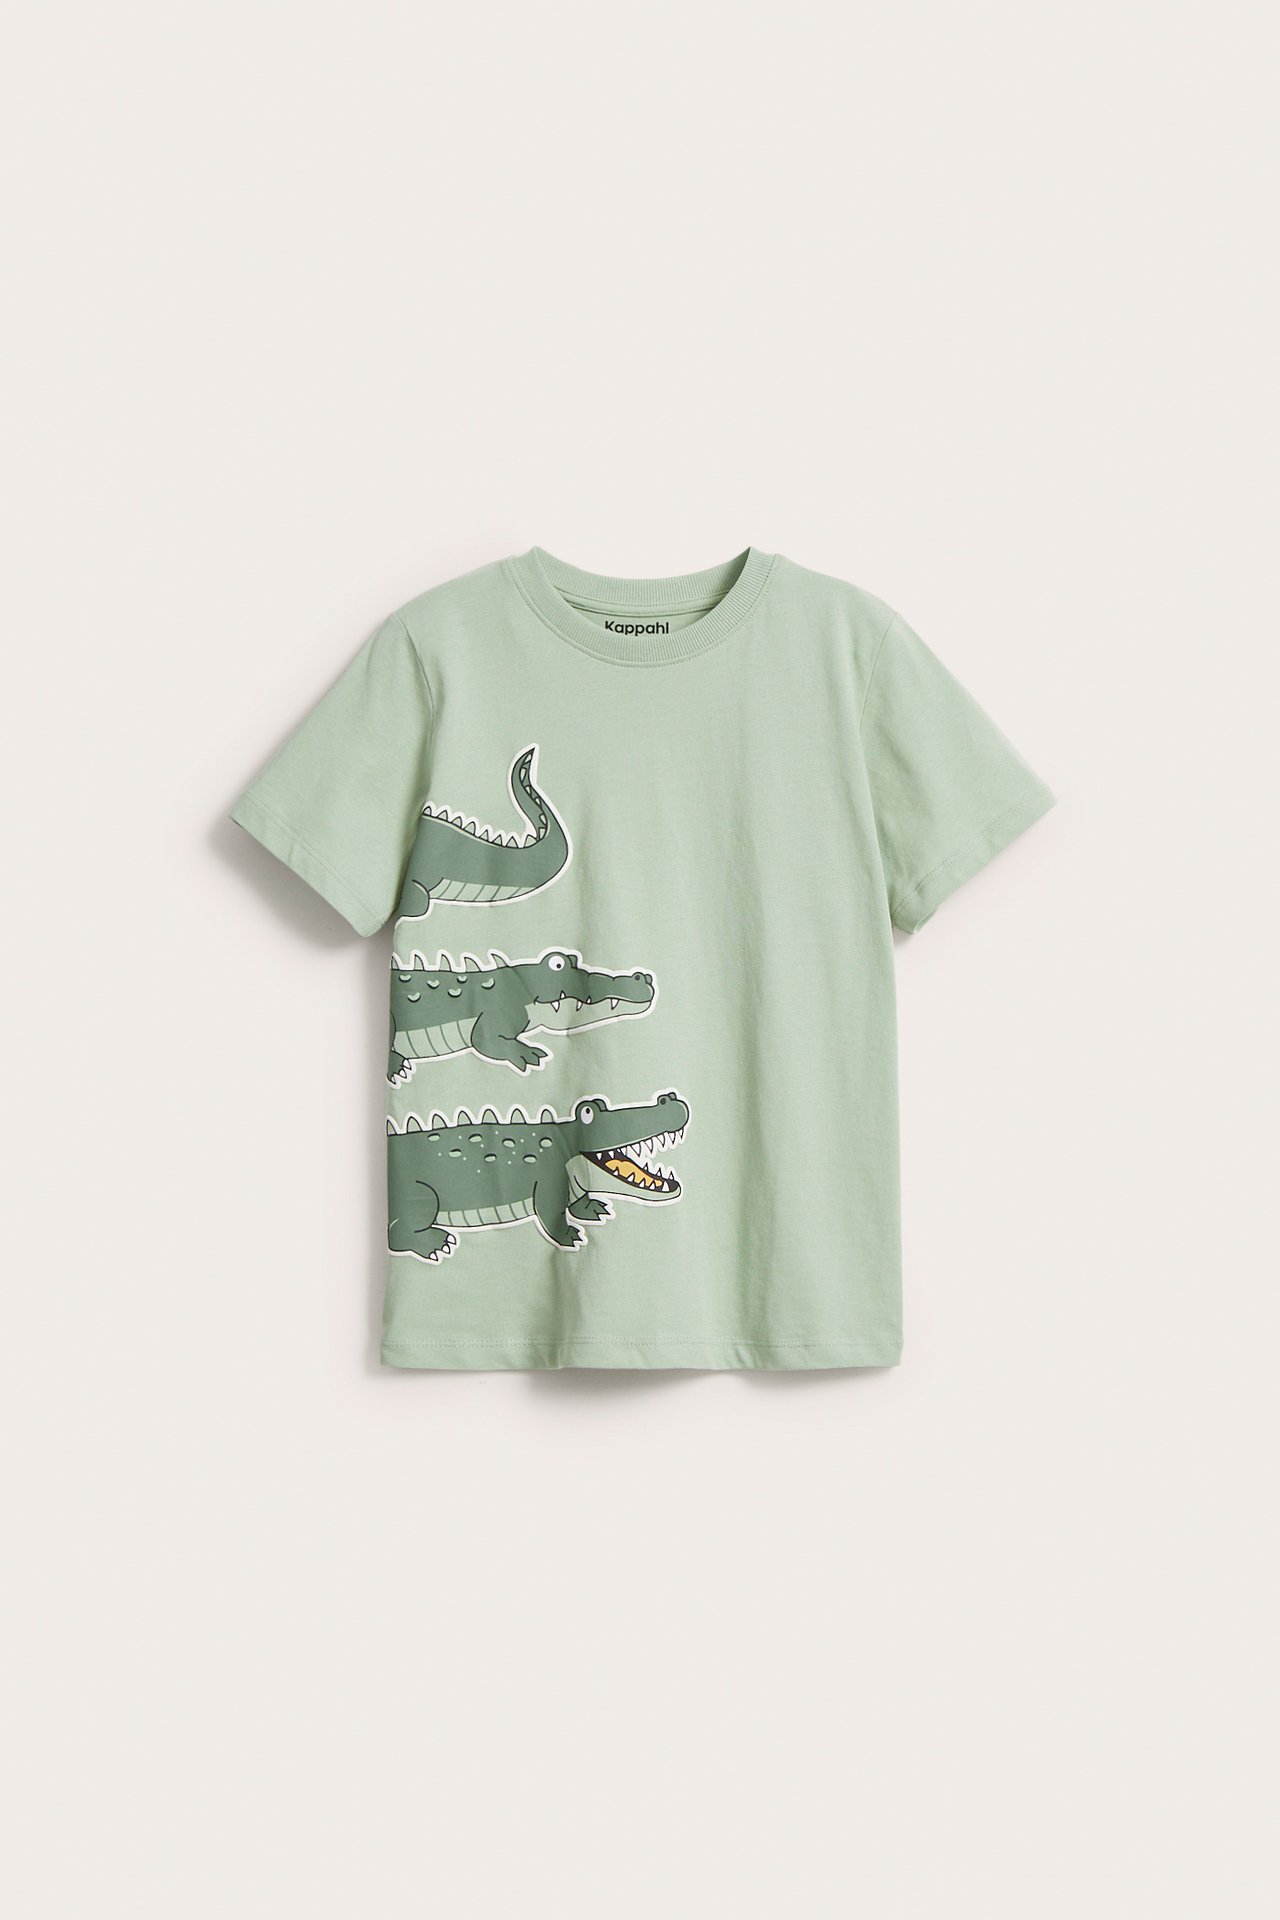 T-shirt w krokodyle - Zielony - 6